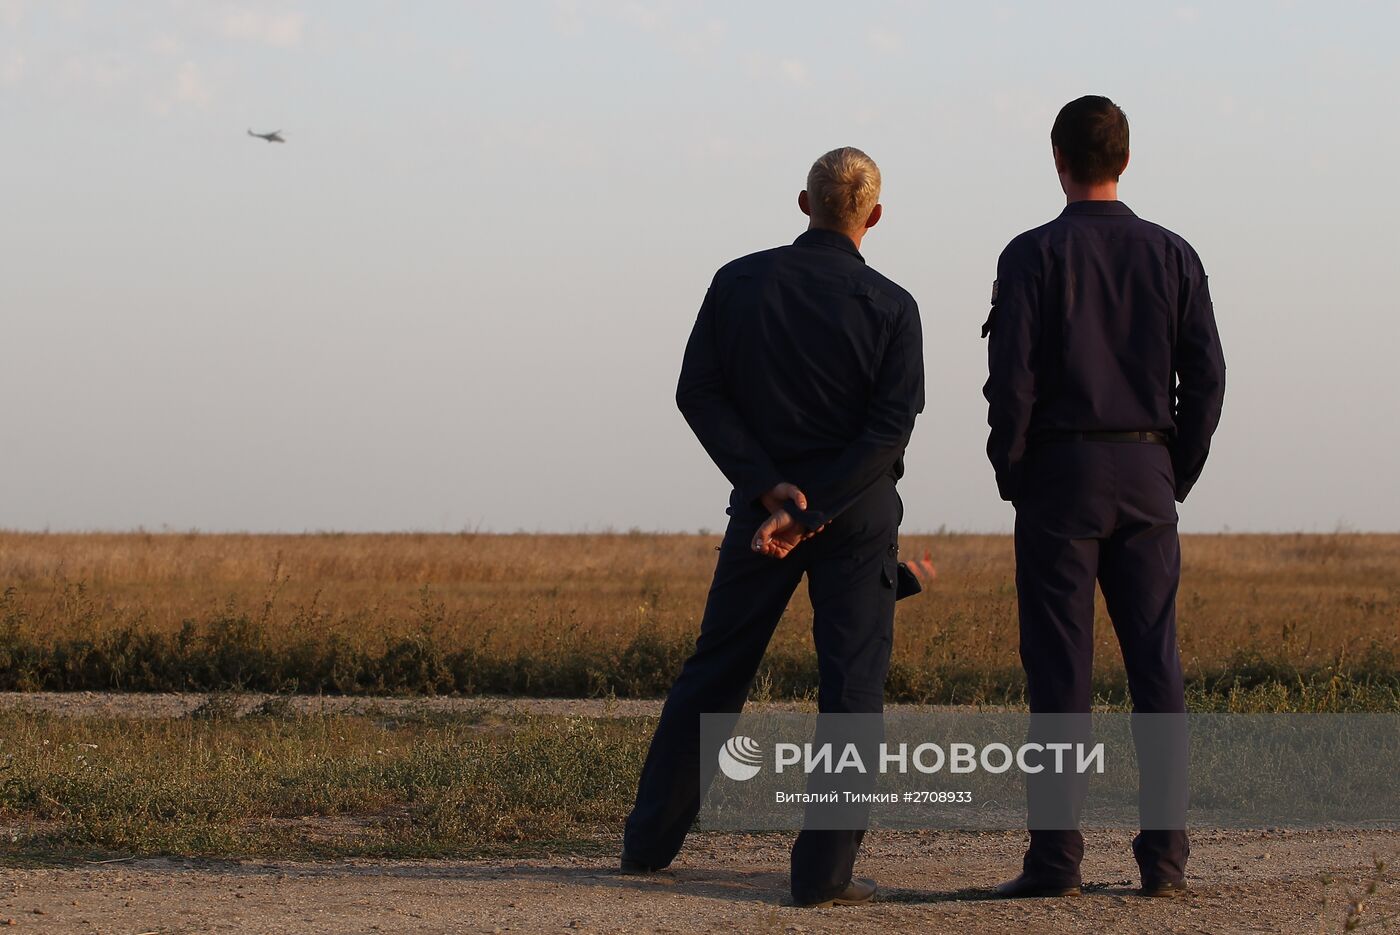 Учебно-тренировочные полеты экипажей вертолетов авиационной базы в Краснодарском крае